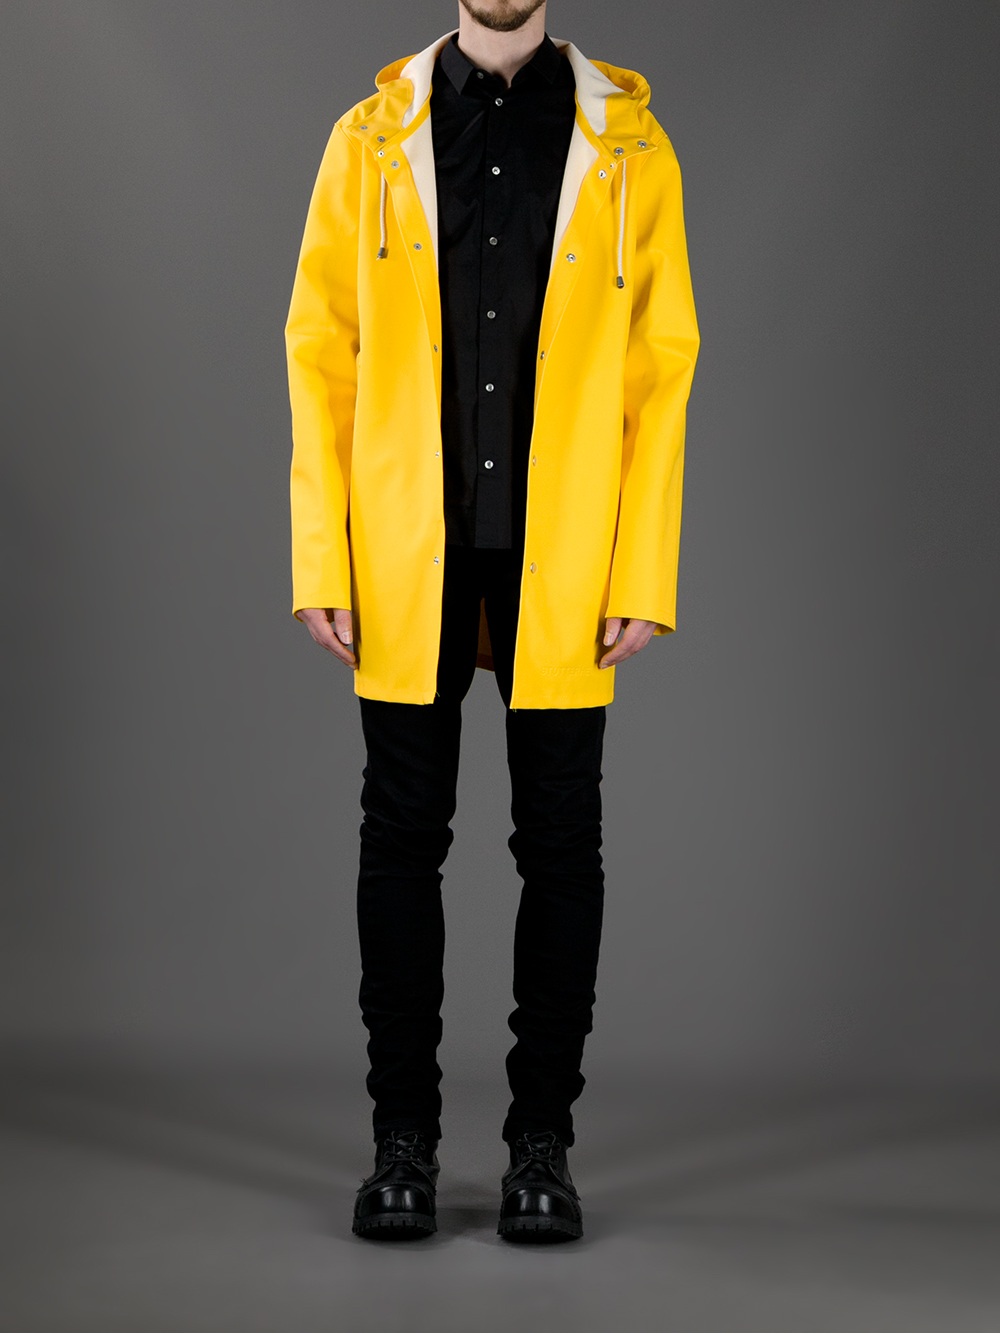 Lyst - Stutterheim Stockholm Raincoat in Yellow for Men